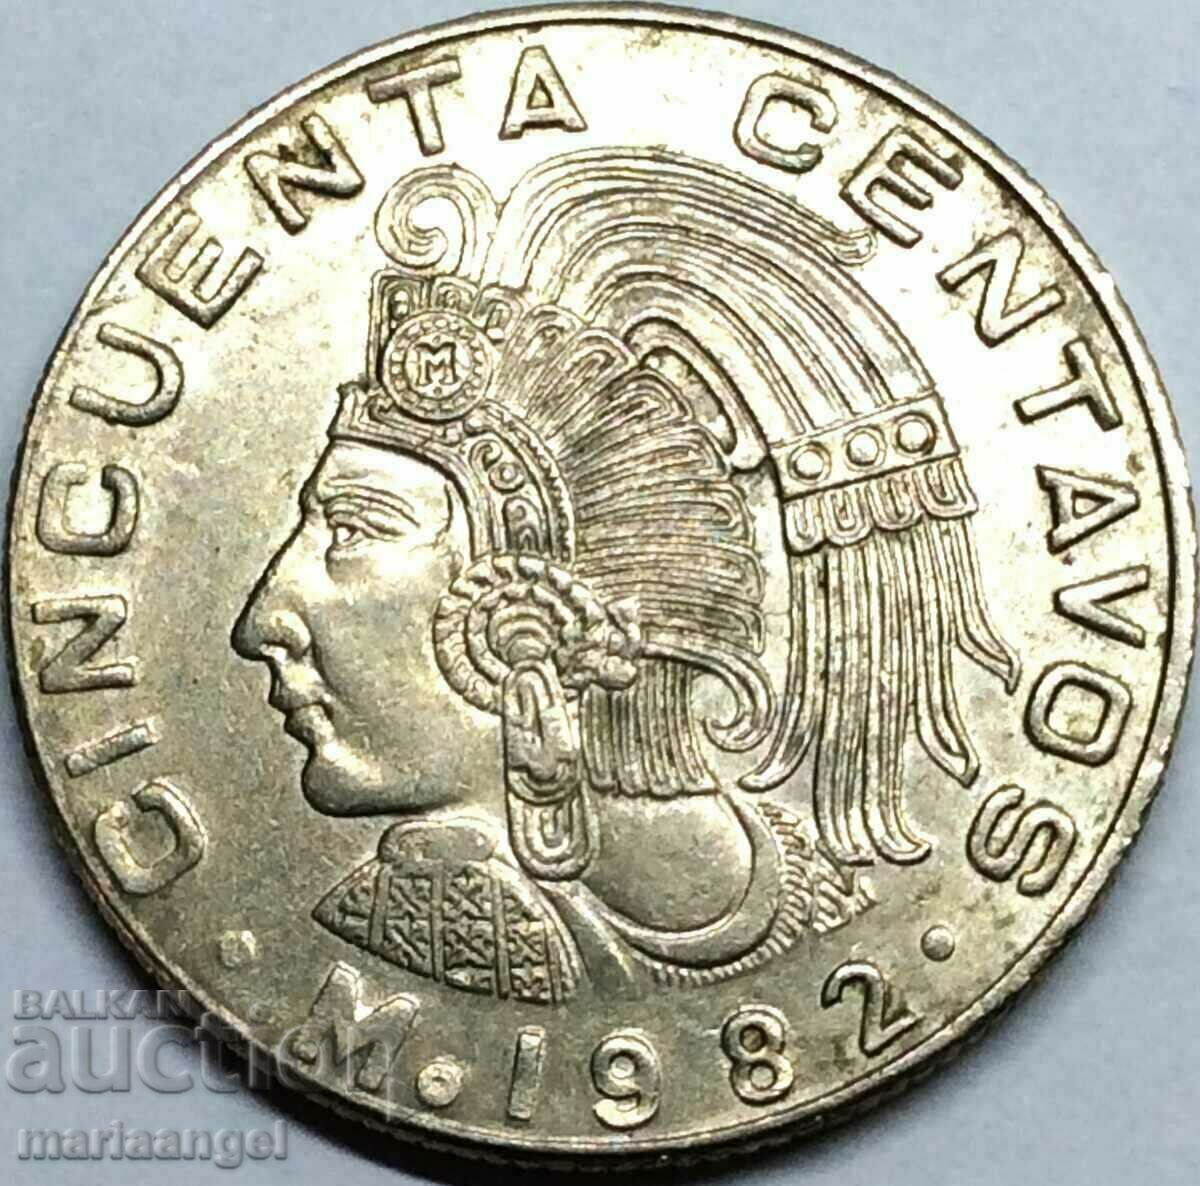 Mexic 1982 50 centavos 25mm